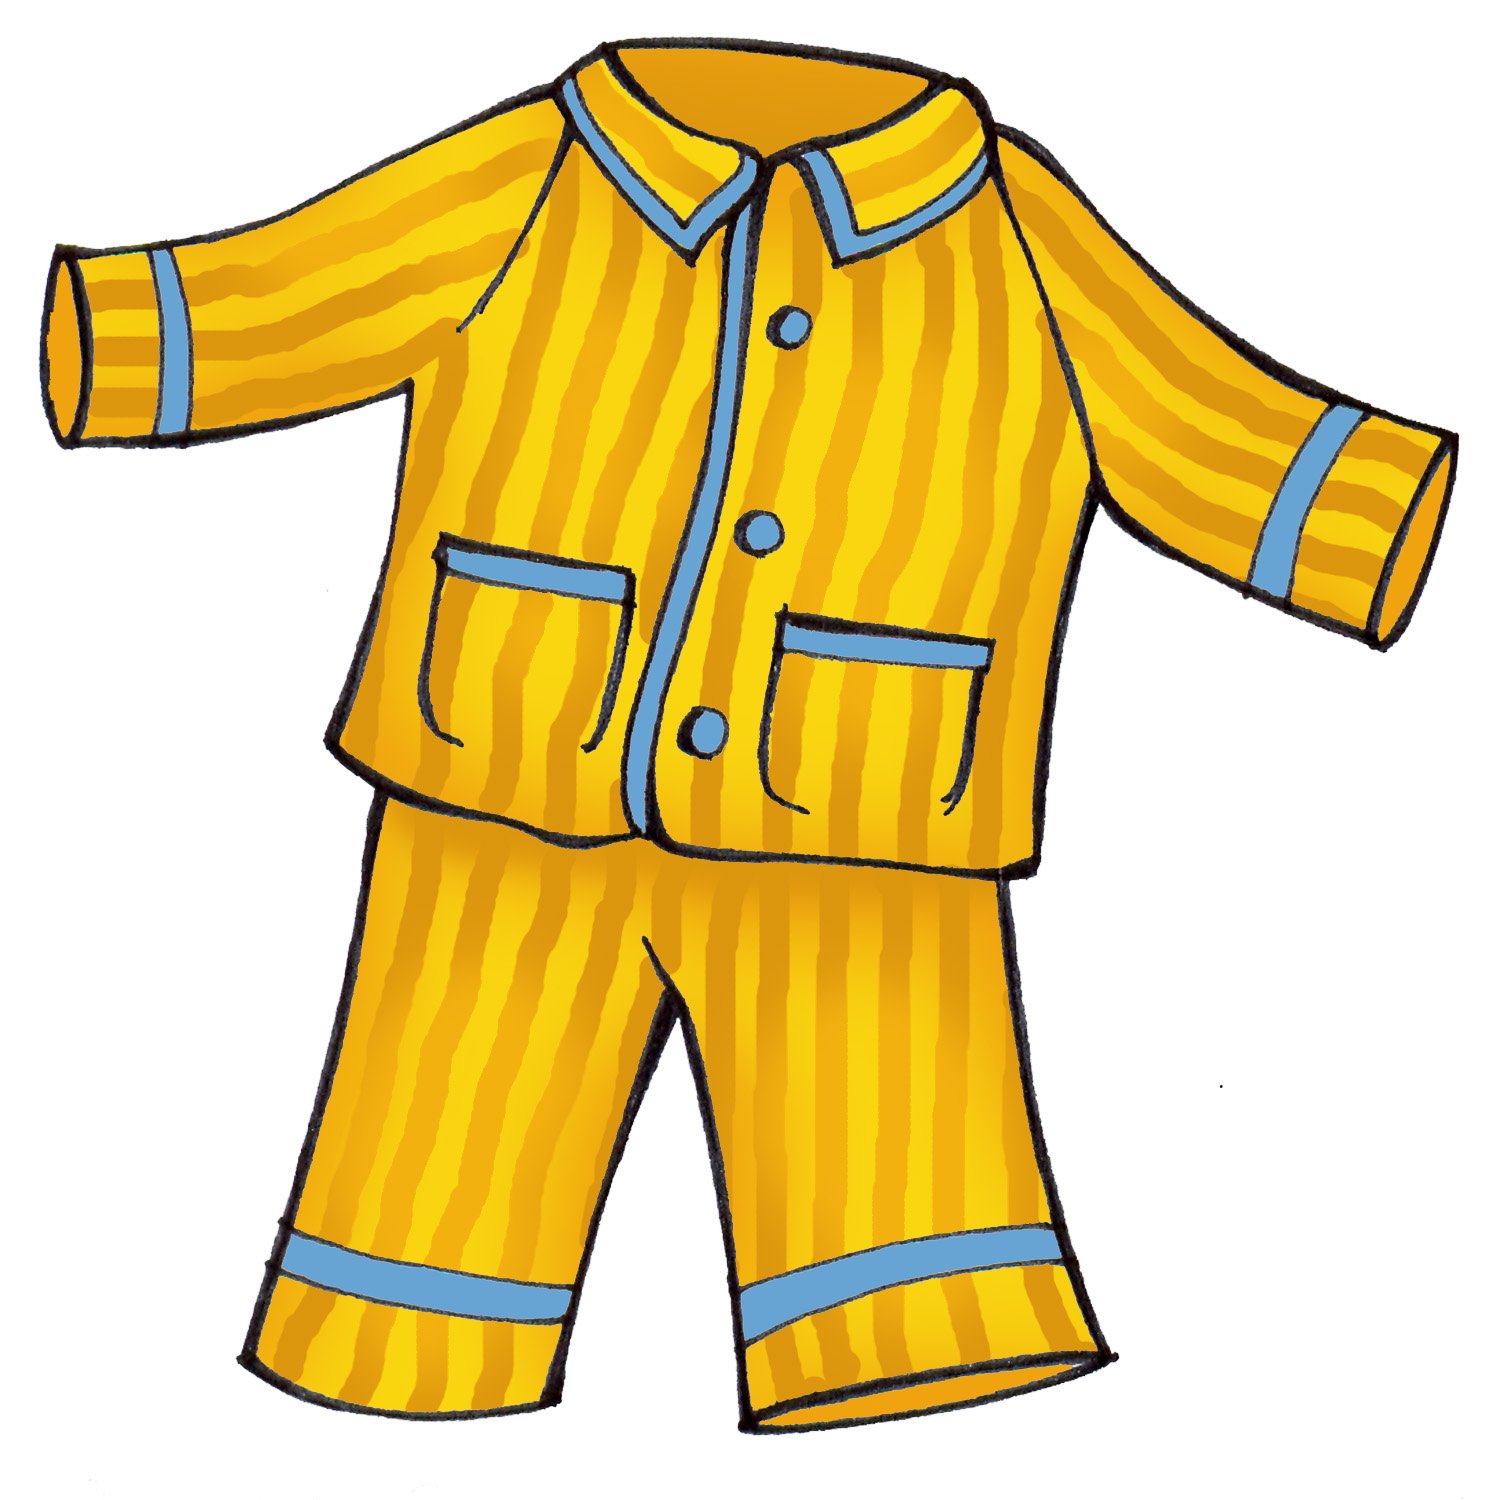 Изображение одежды для детей